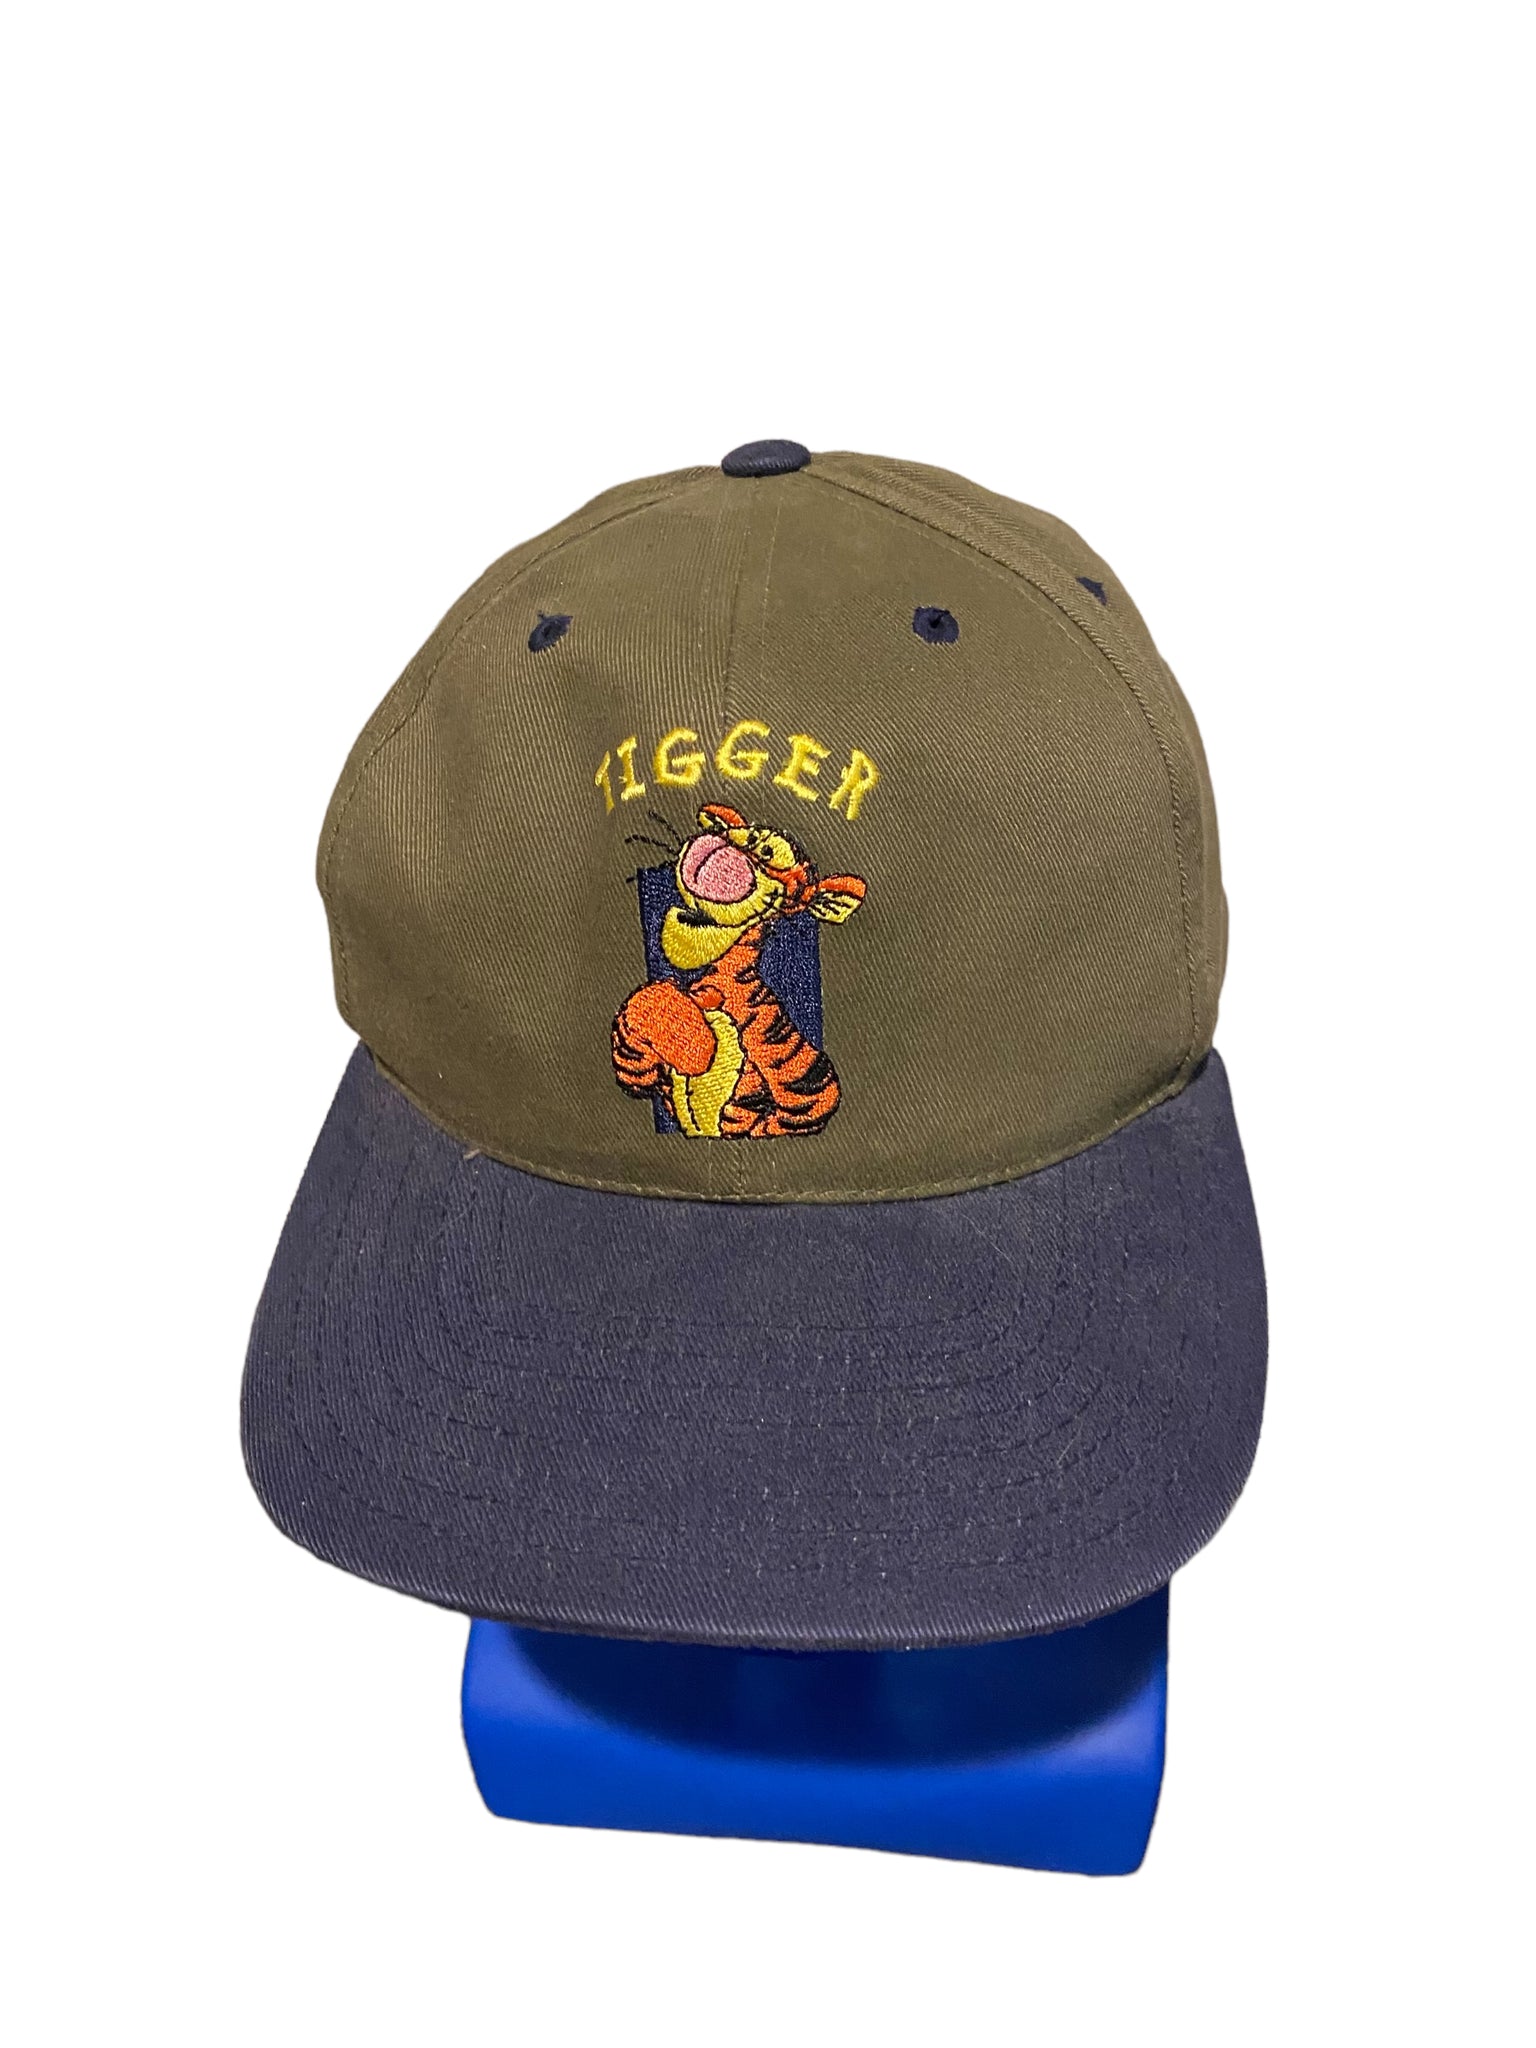 Vintage Disney Tigger adjustable Hat SnapBack with Winnie the Pooh tag